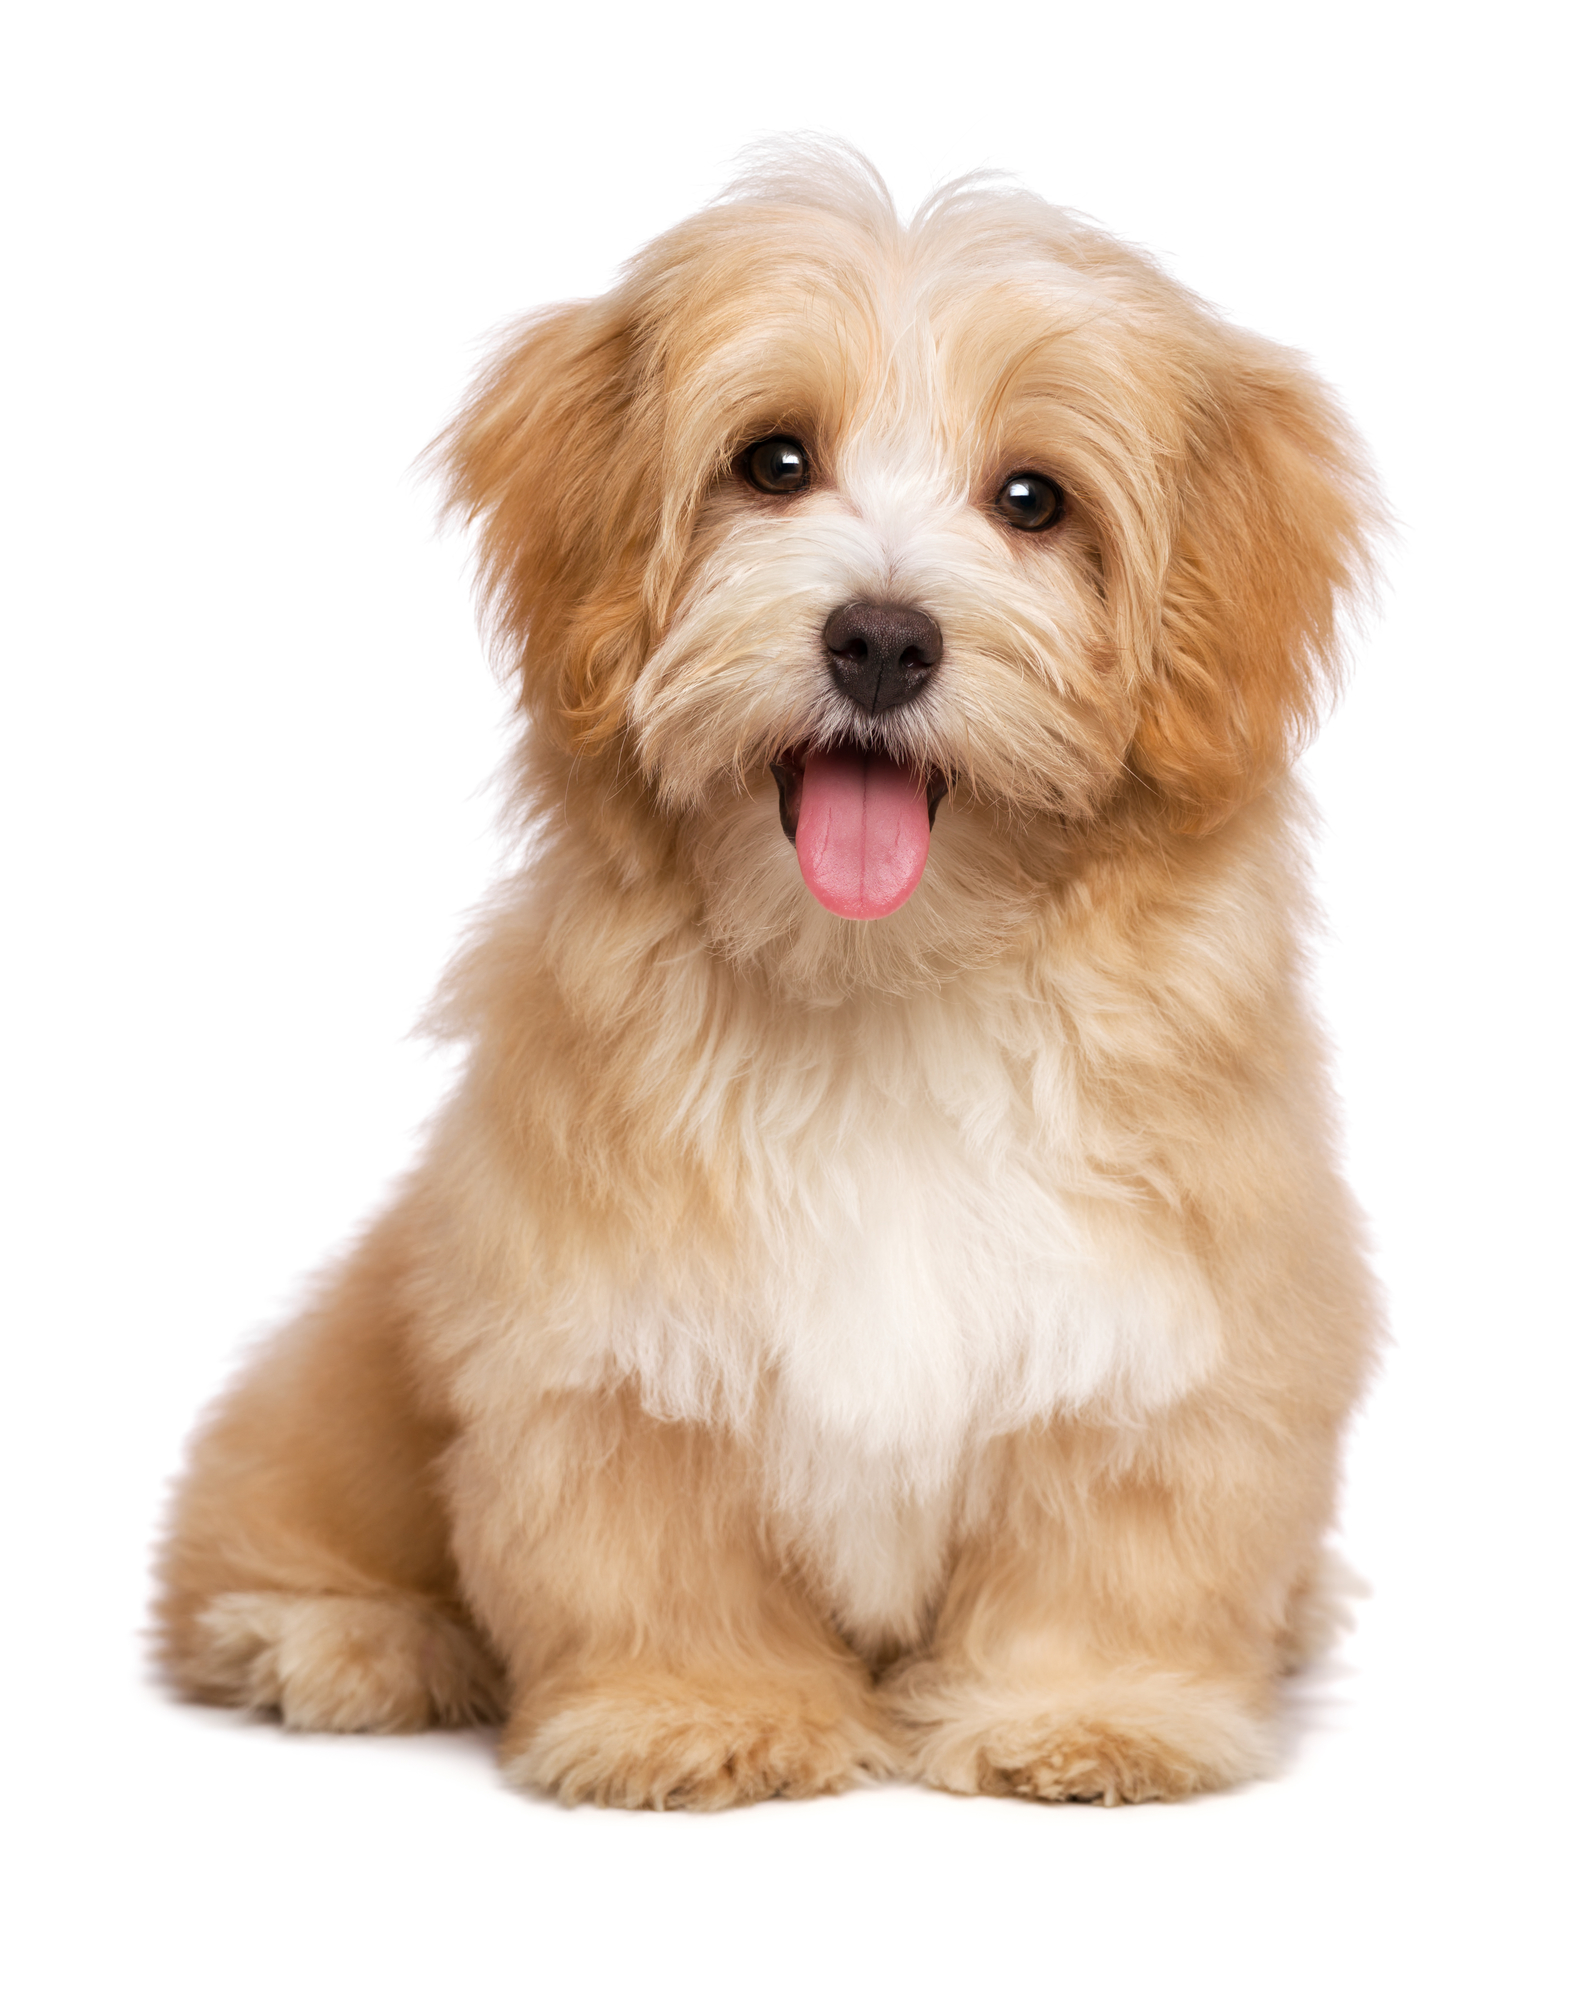 Hotellet Atlantic rytme Agria hundeforsikring | Find en billig forsikring til din hund her » 2023